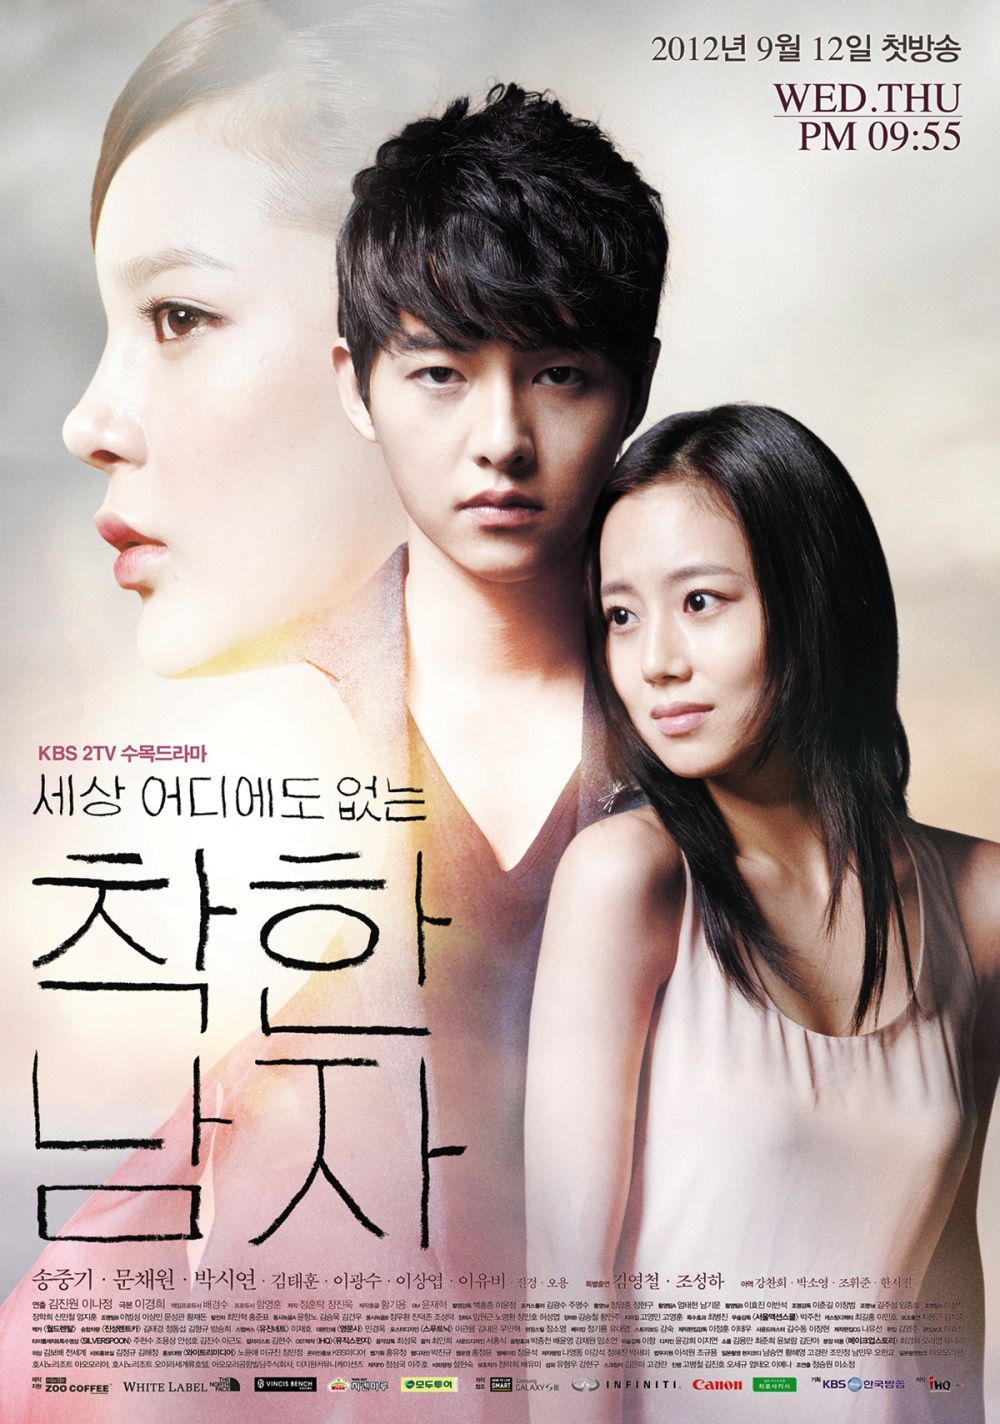 9 Drama Korea bertema balas dendam, penuh intrik dan ketegangan